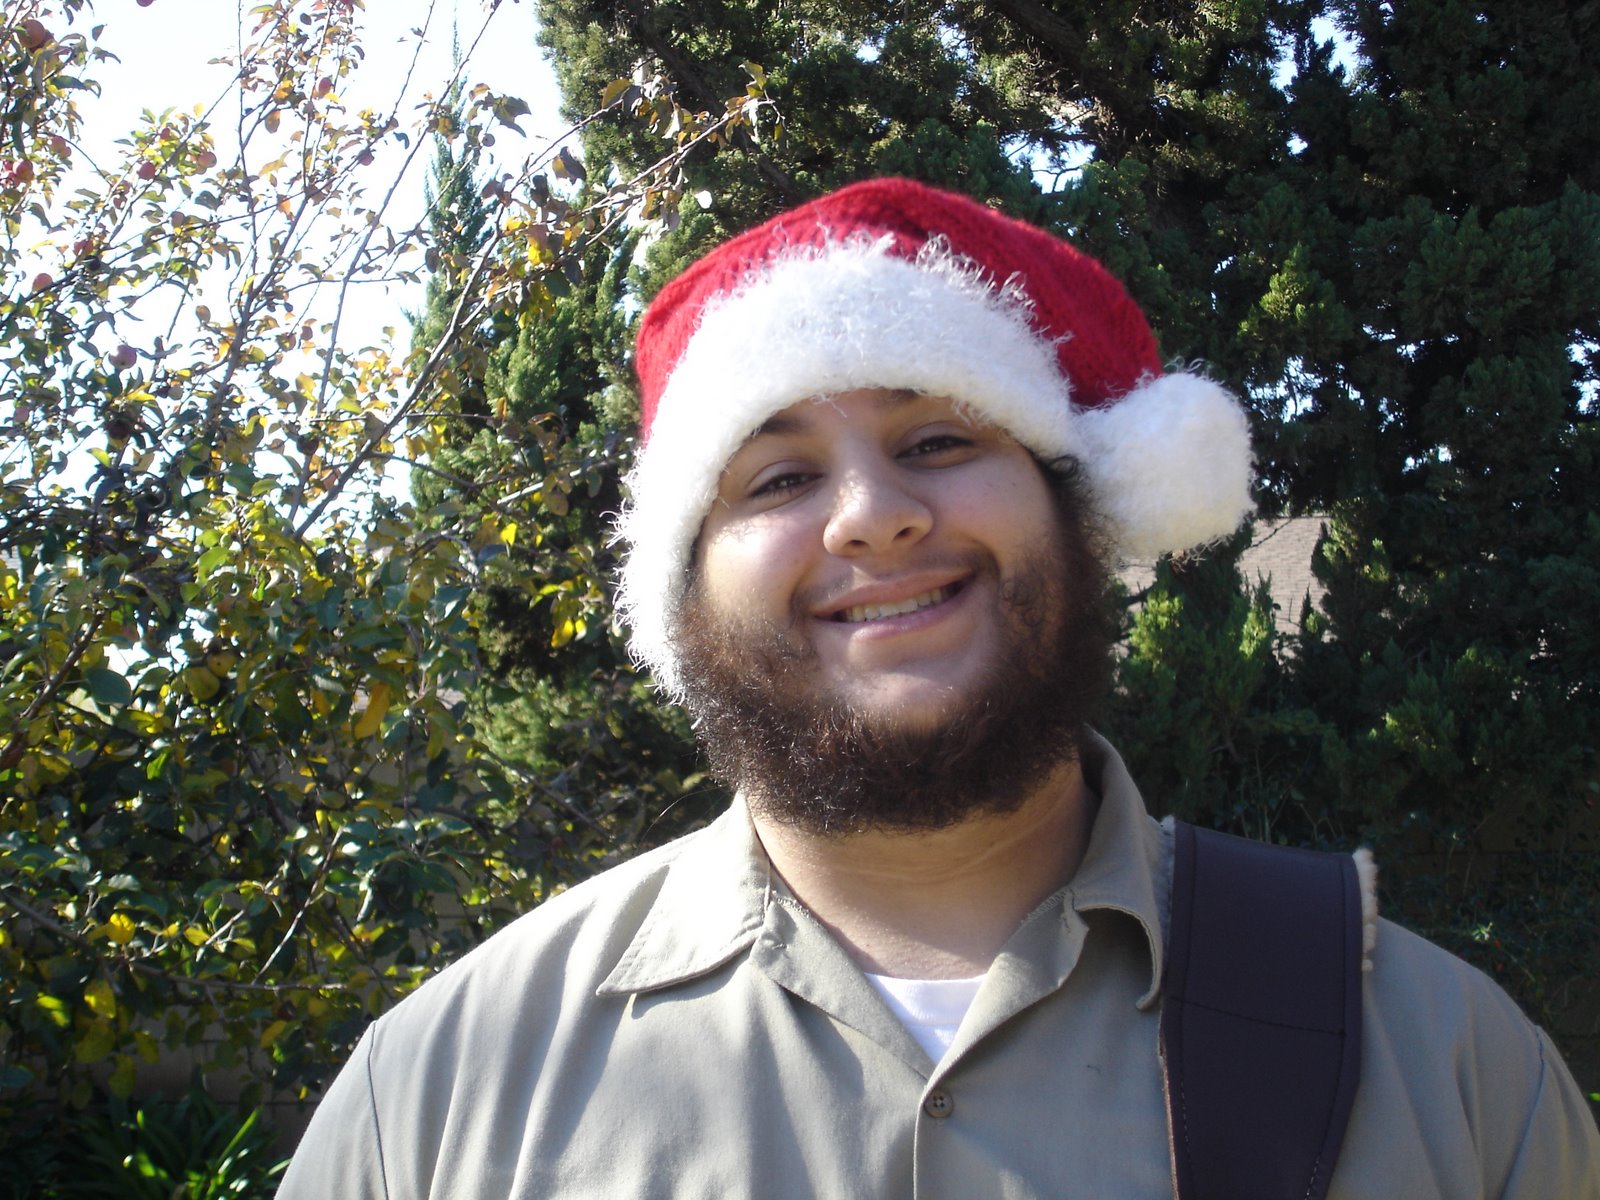 [Kevin+Santa+Hat.jpg]